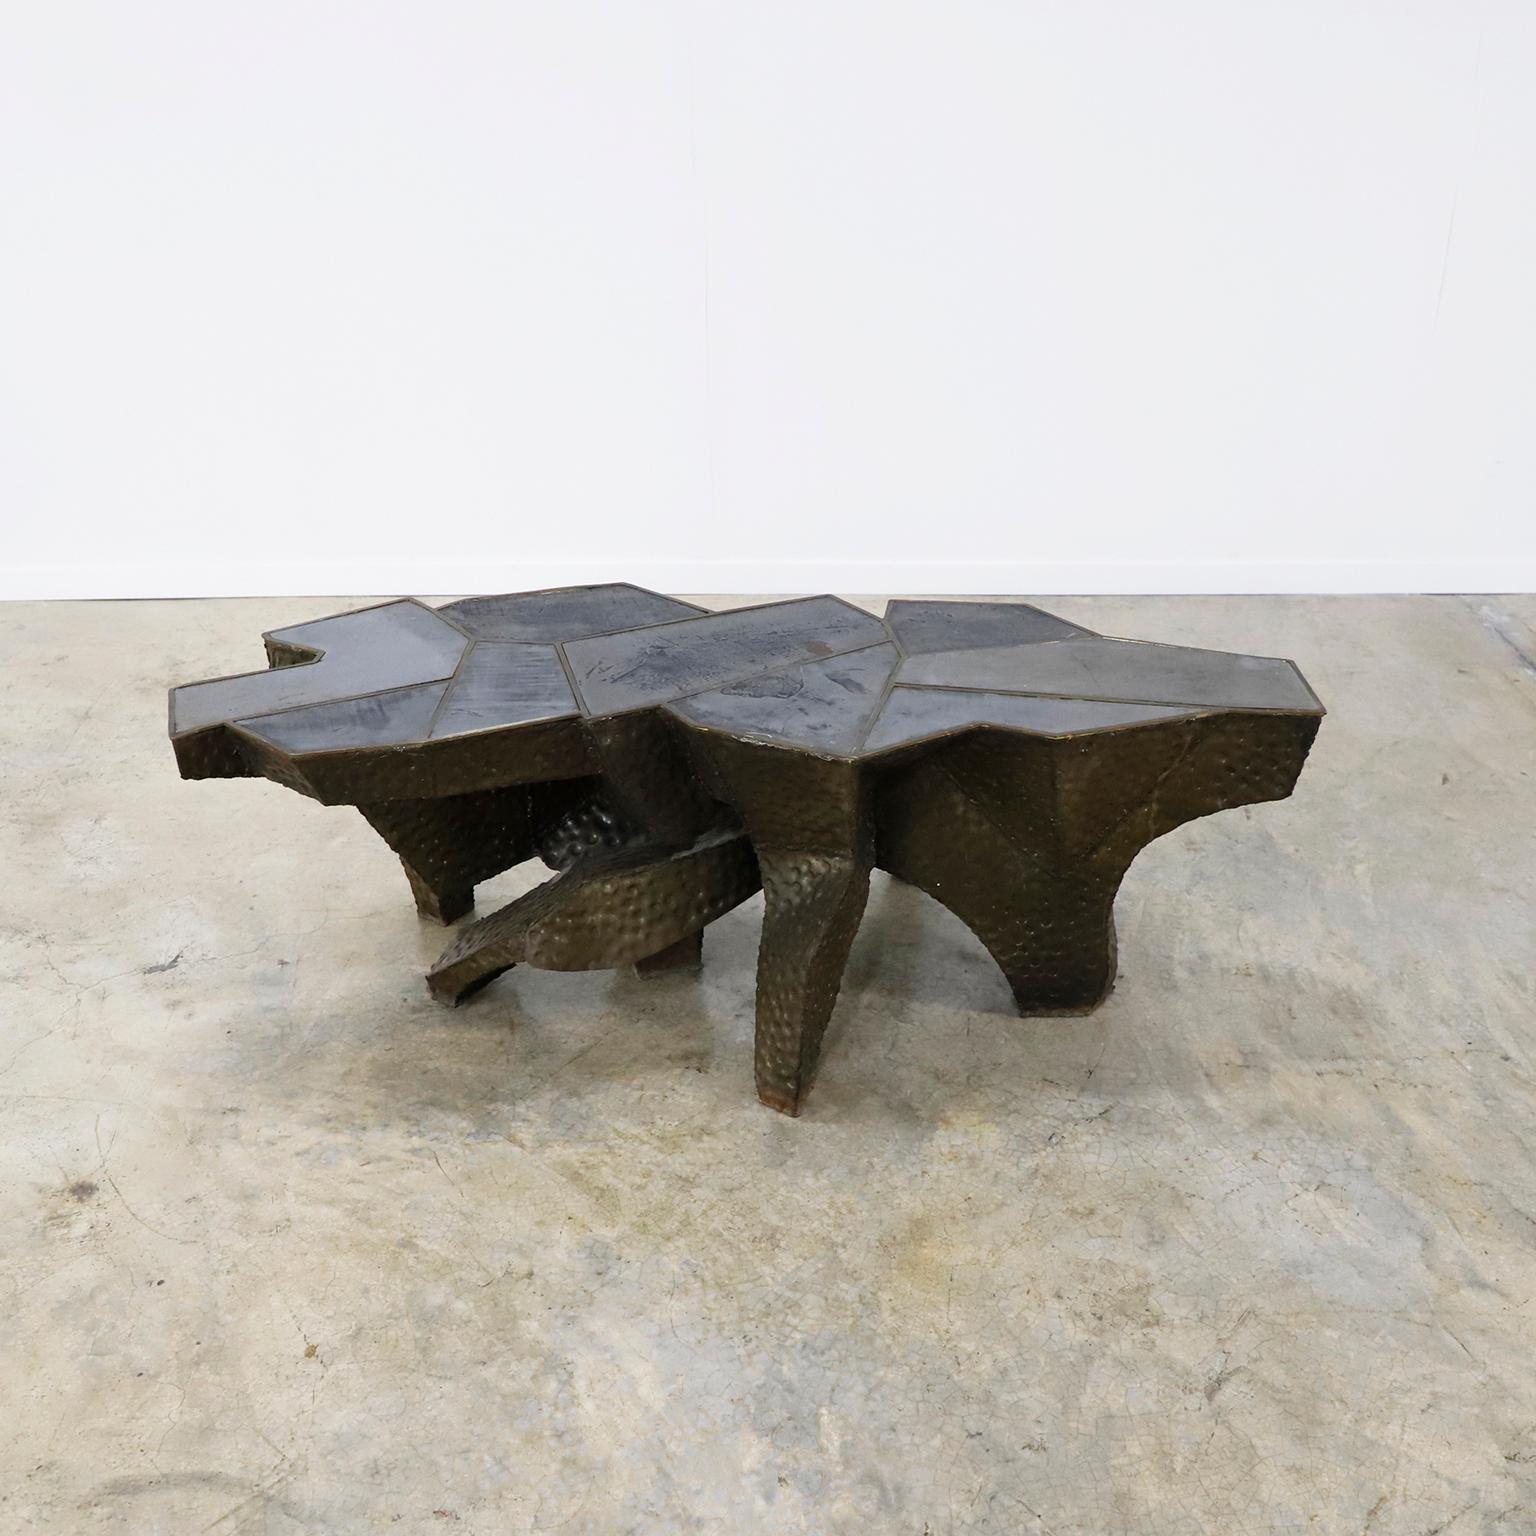 Circa 1960. Wir bieten dieses seltene Paar handgefertigter brutalistischer Beistelltische aus Messing und massiven Eisenplatten auf der Tischplatte an. Schöne Tische werden zu einem Kunstwerk
